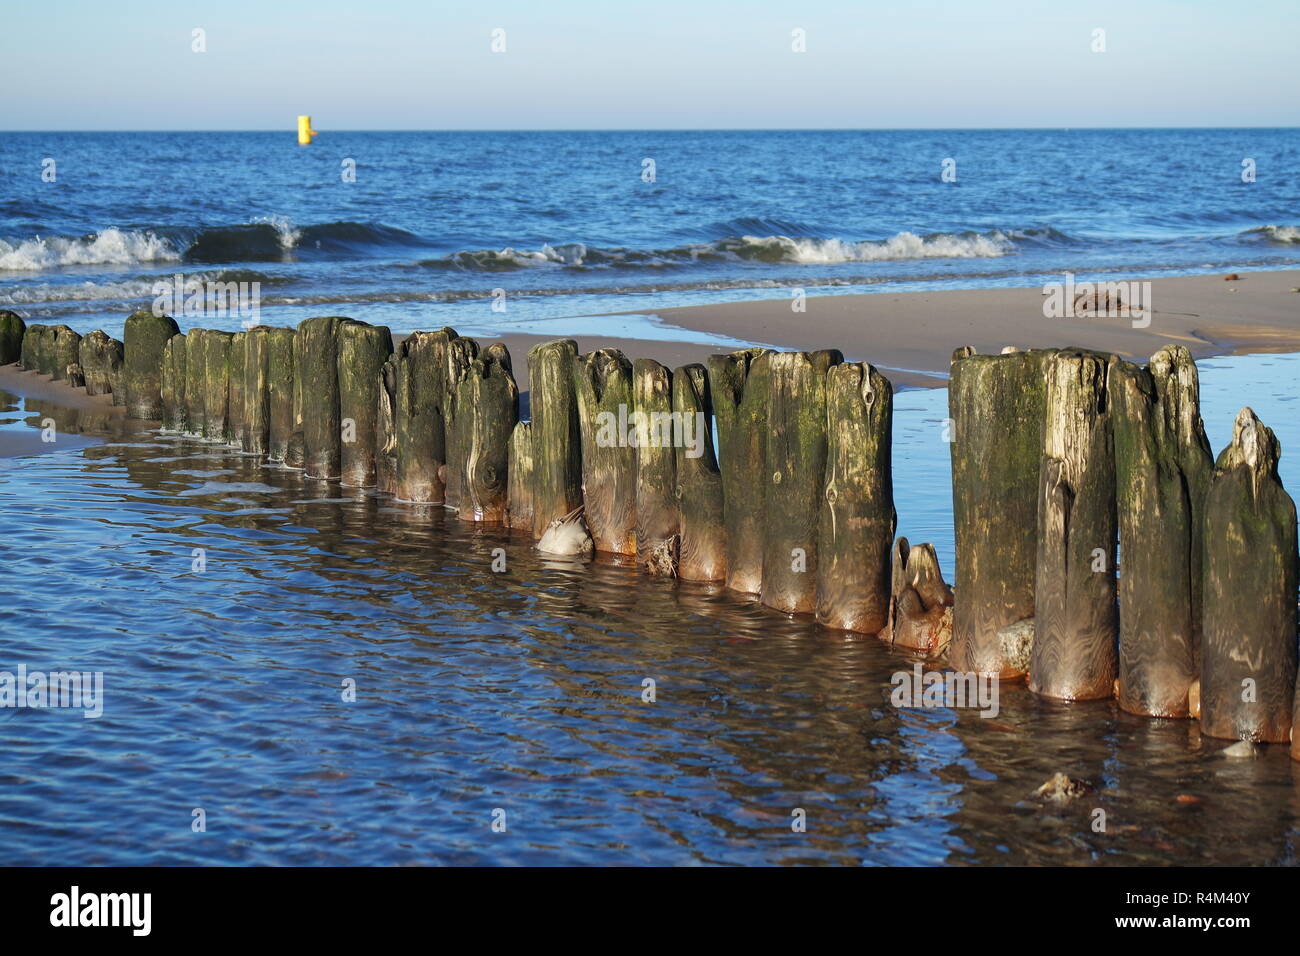 Onda vieja breakers en el mar Báltico Foto de stock